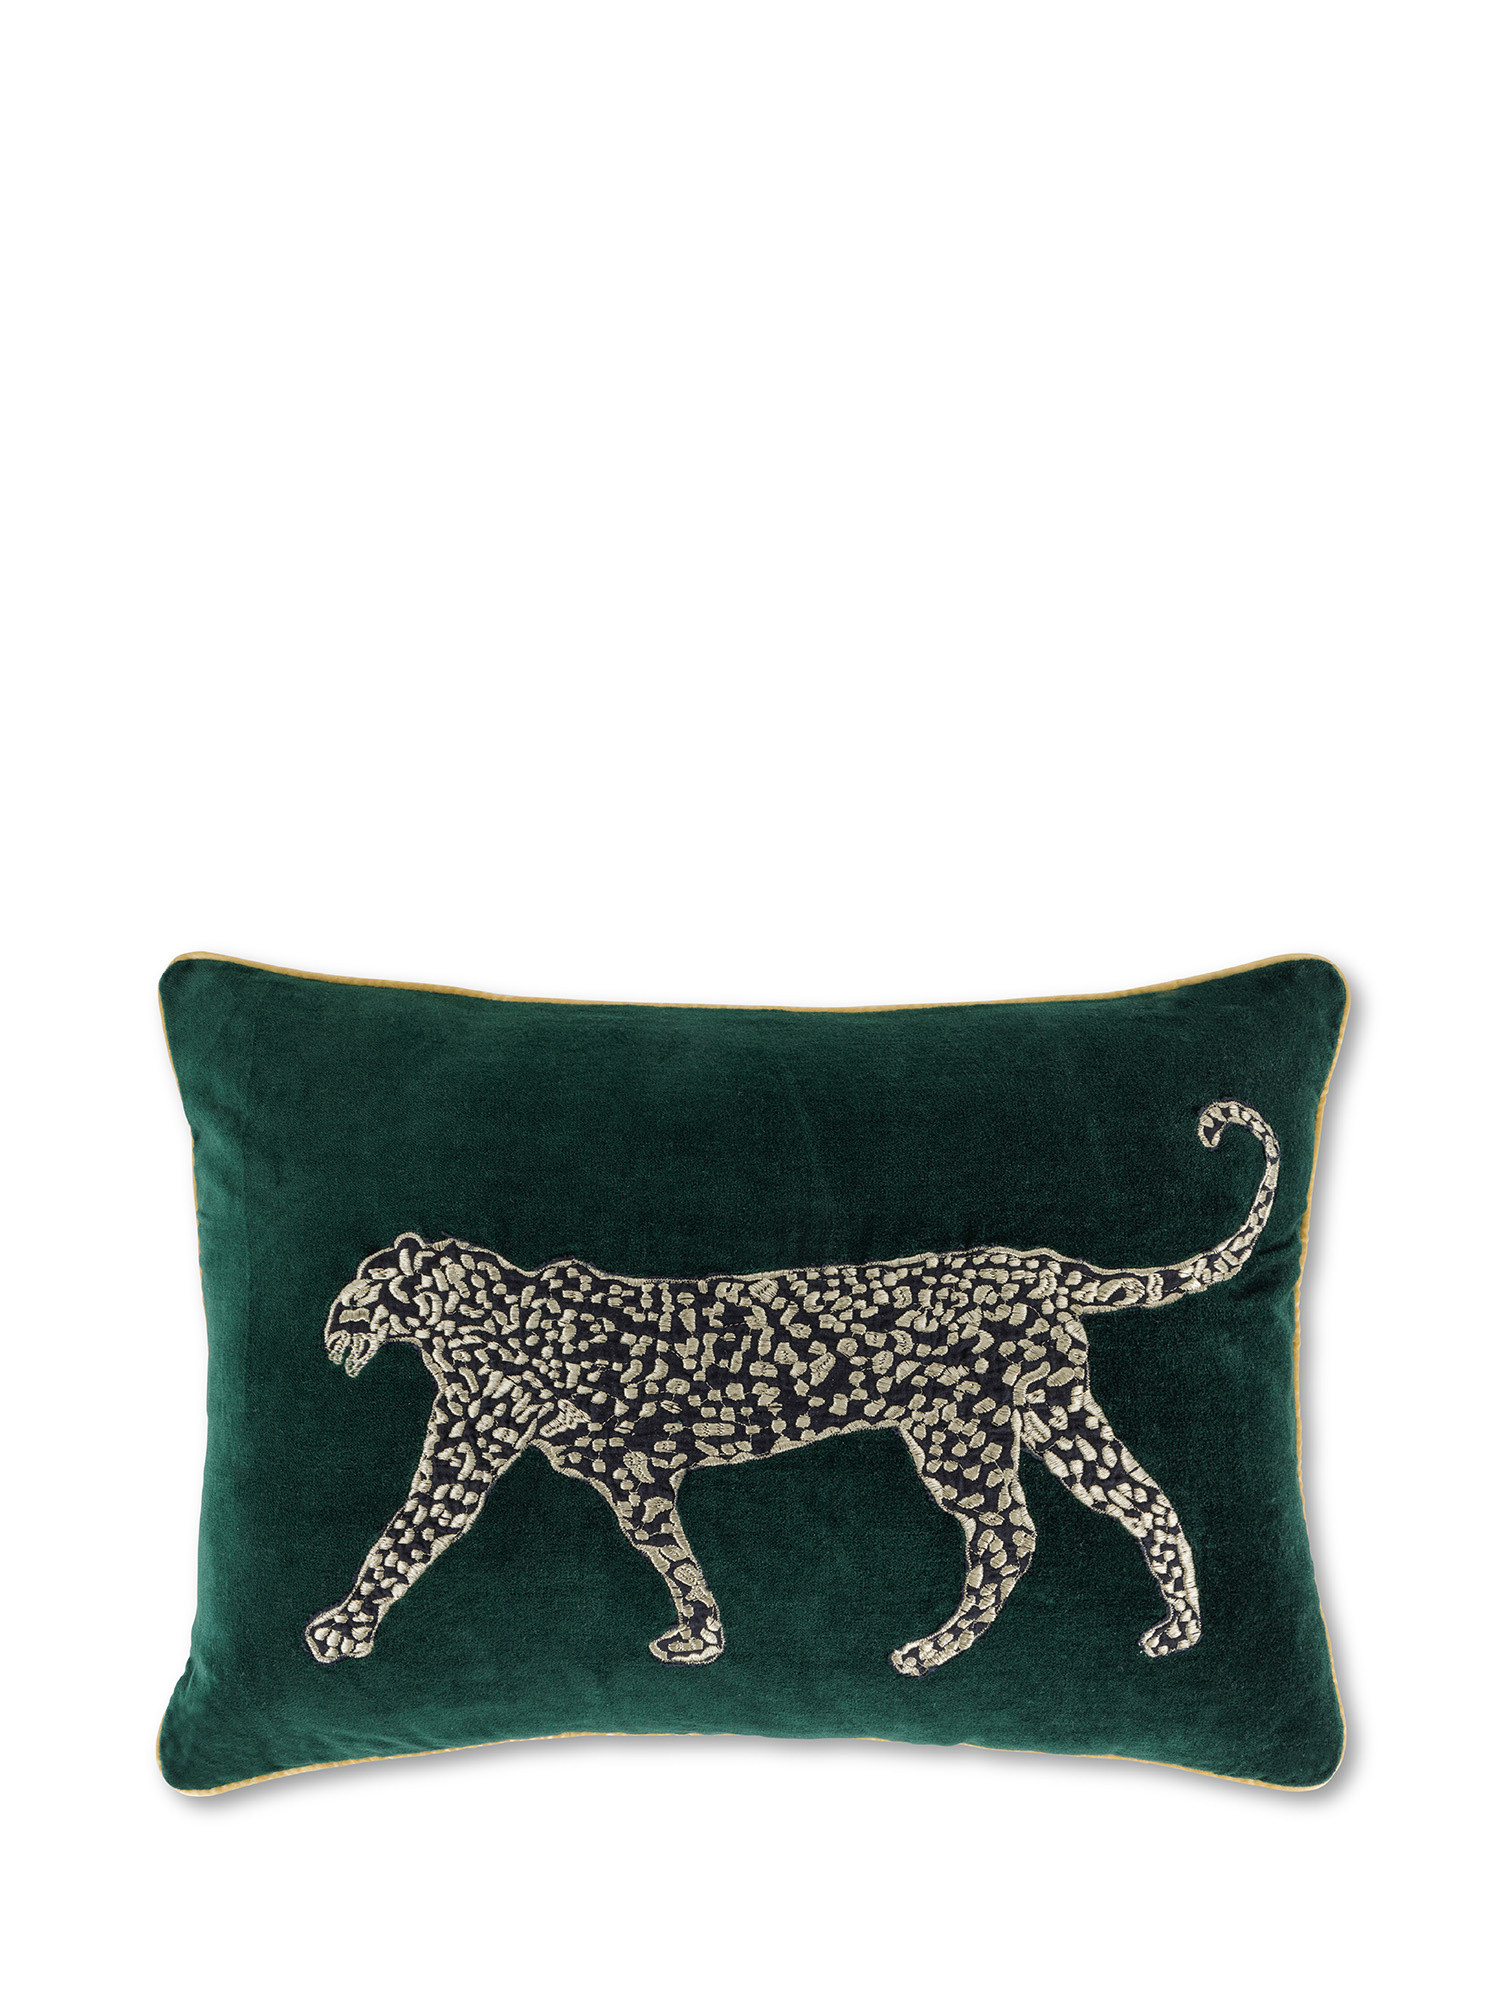 Cuscino in velluto ricamo leopardo 35x50 cm, Verde, large image number 0